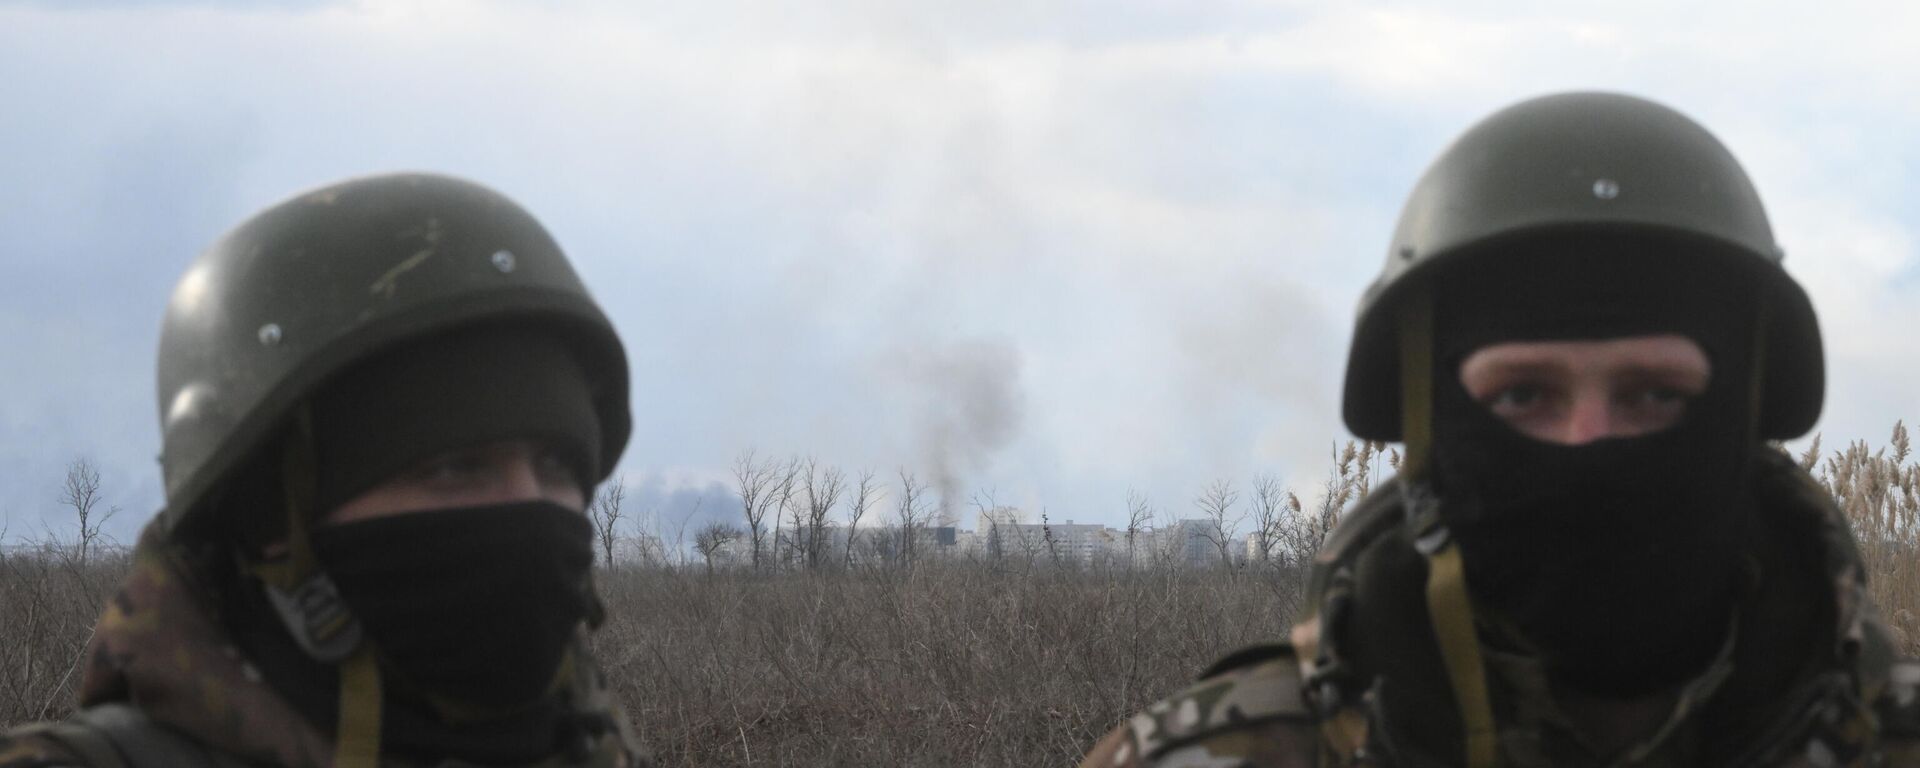 Các quân nhân của Cộng hòa Nhân dân Donetsk được chụp gần Mariupol, nơi diễn ra các cuộc giao tranh, ở Ukraina - Sputnik Việt Nam, 1920, 06.03.2022